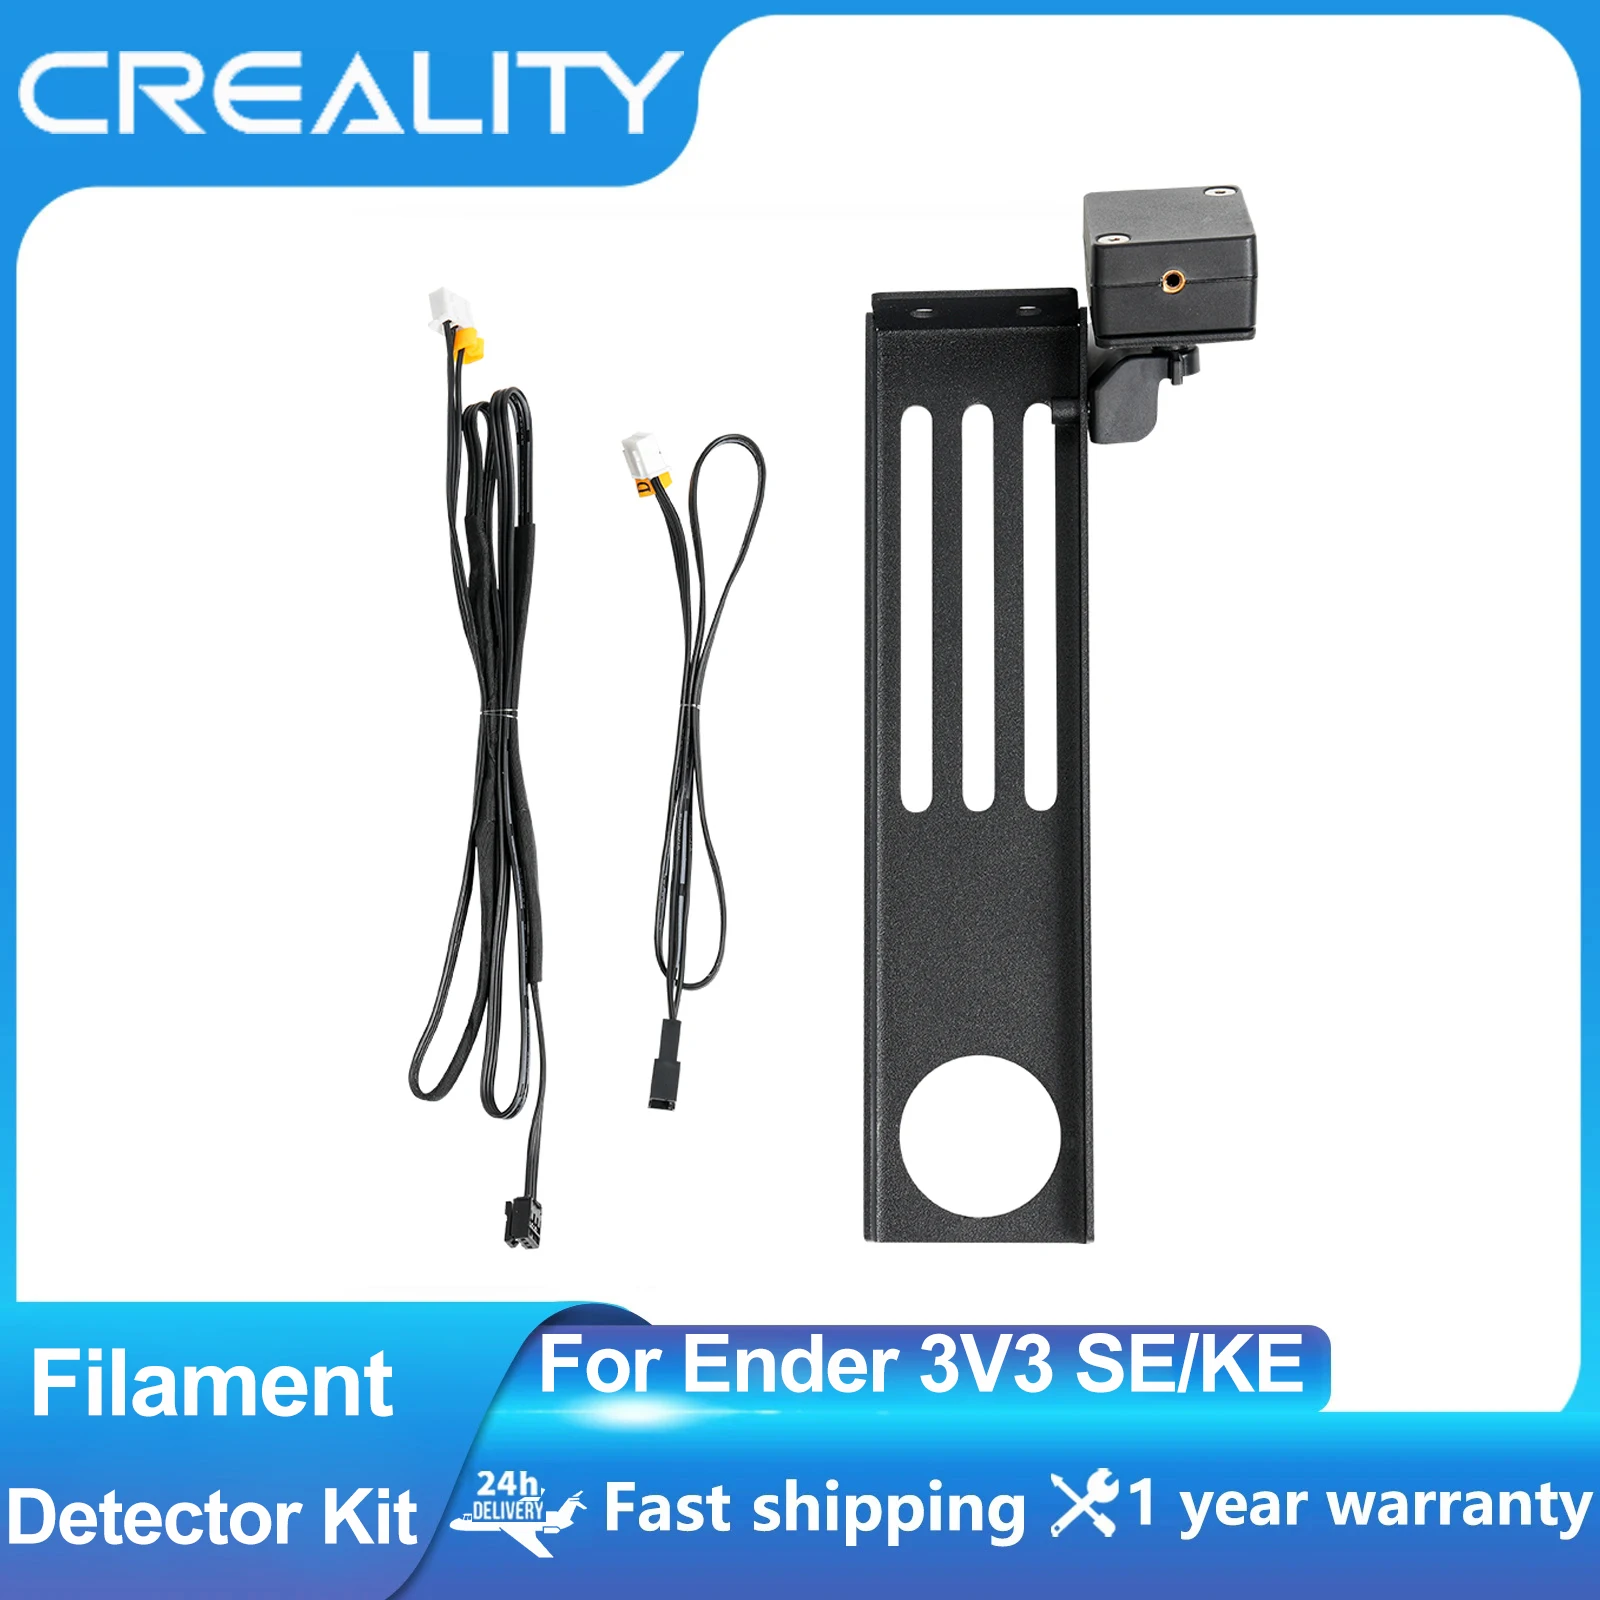 CREALITY 3D Printer Ender-3V3 SE Filament Detector Kit With Bracket Innovative Intelligent Automatic Sensitive for Ender 3V3 KE